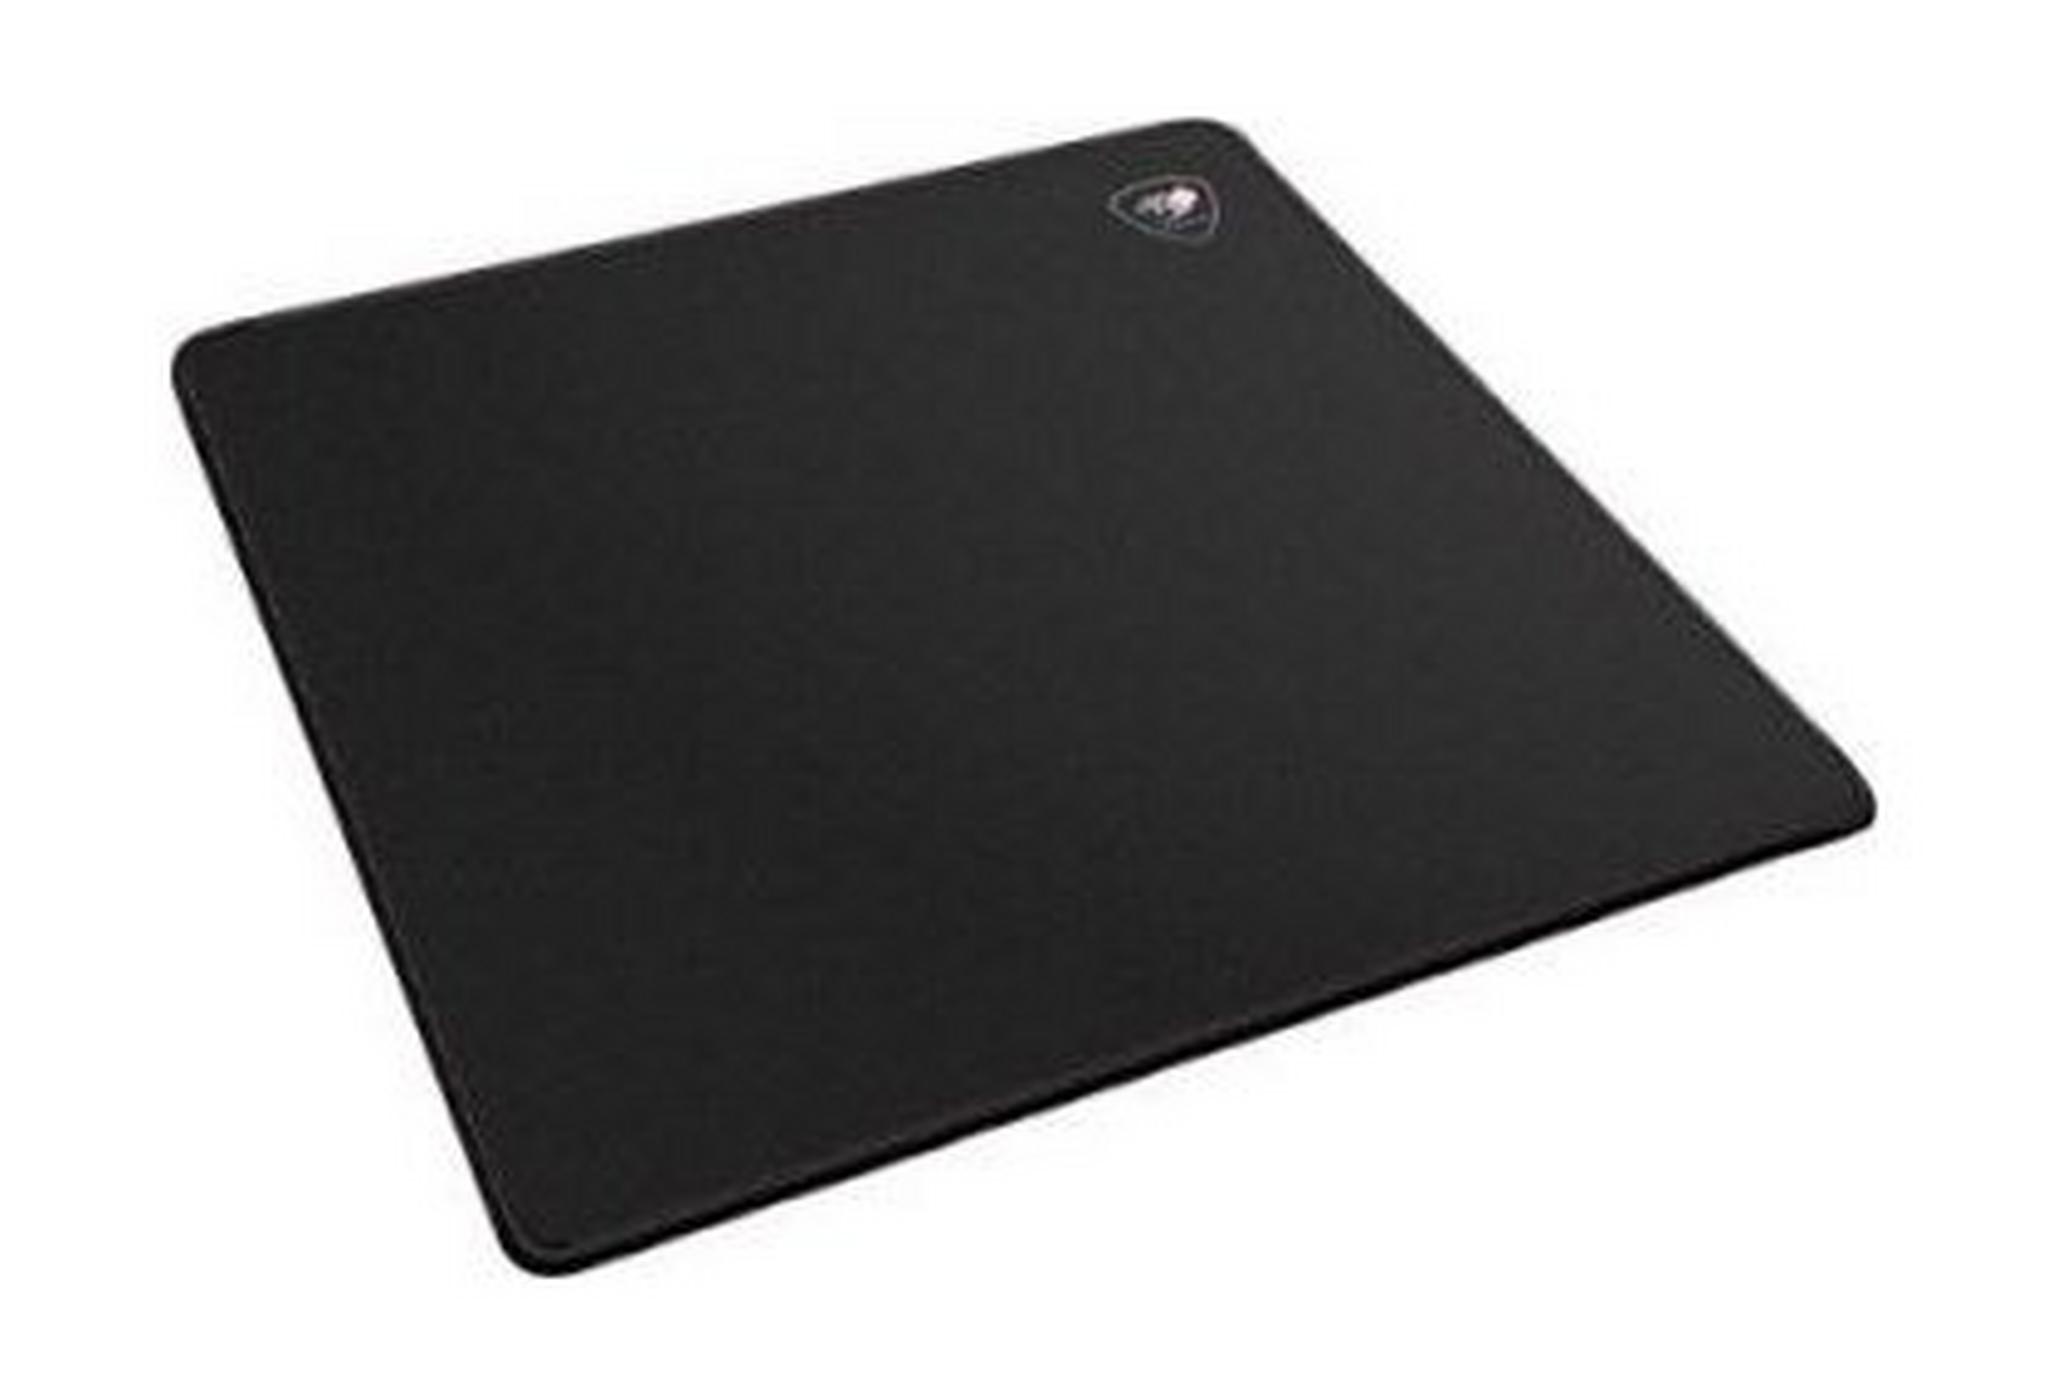 Cougar Speed EX Gaming Mouse Pad (Medium) - Black